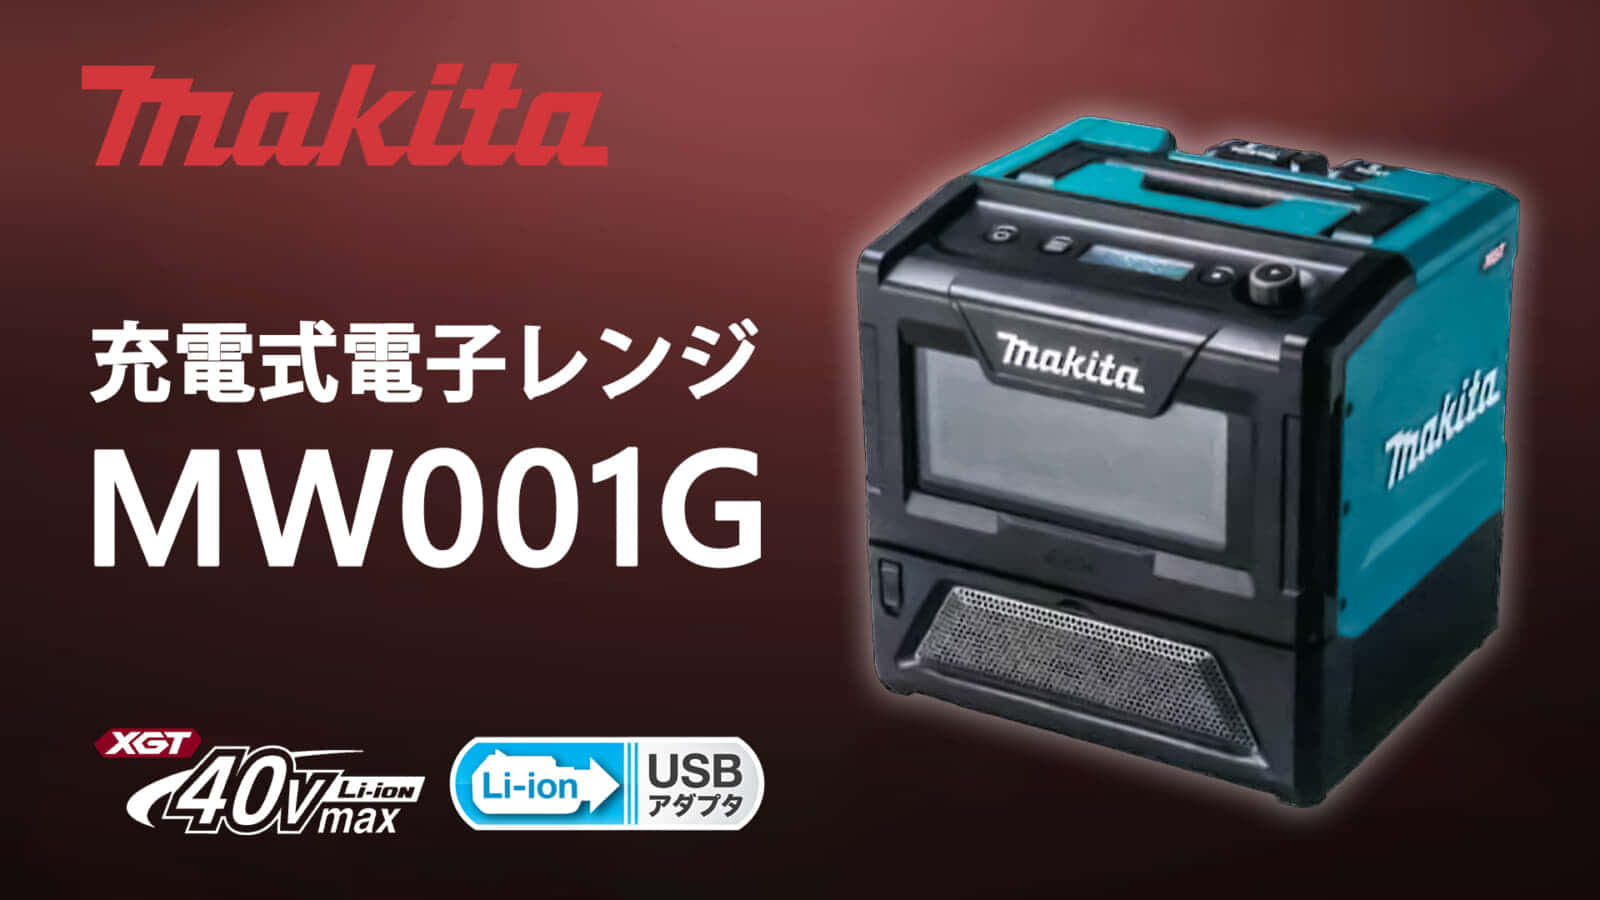 マキタ MW001G 充電式電子レンジを発売、40Vmaxシリーズの調理家電 ｜ VOLTECHNO